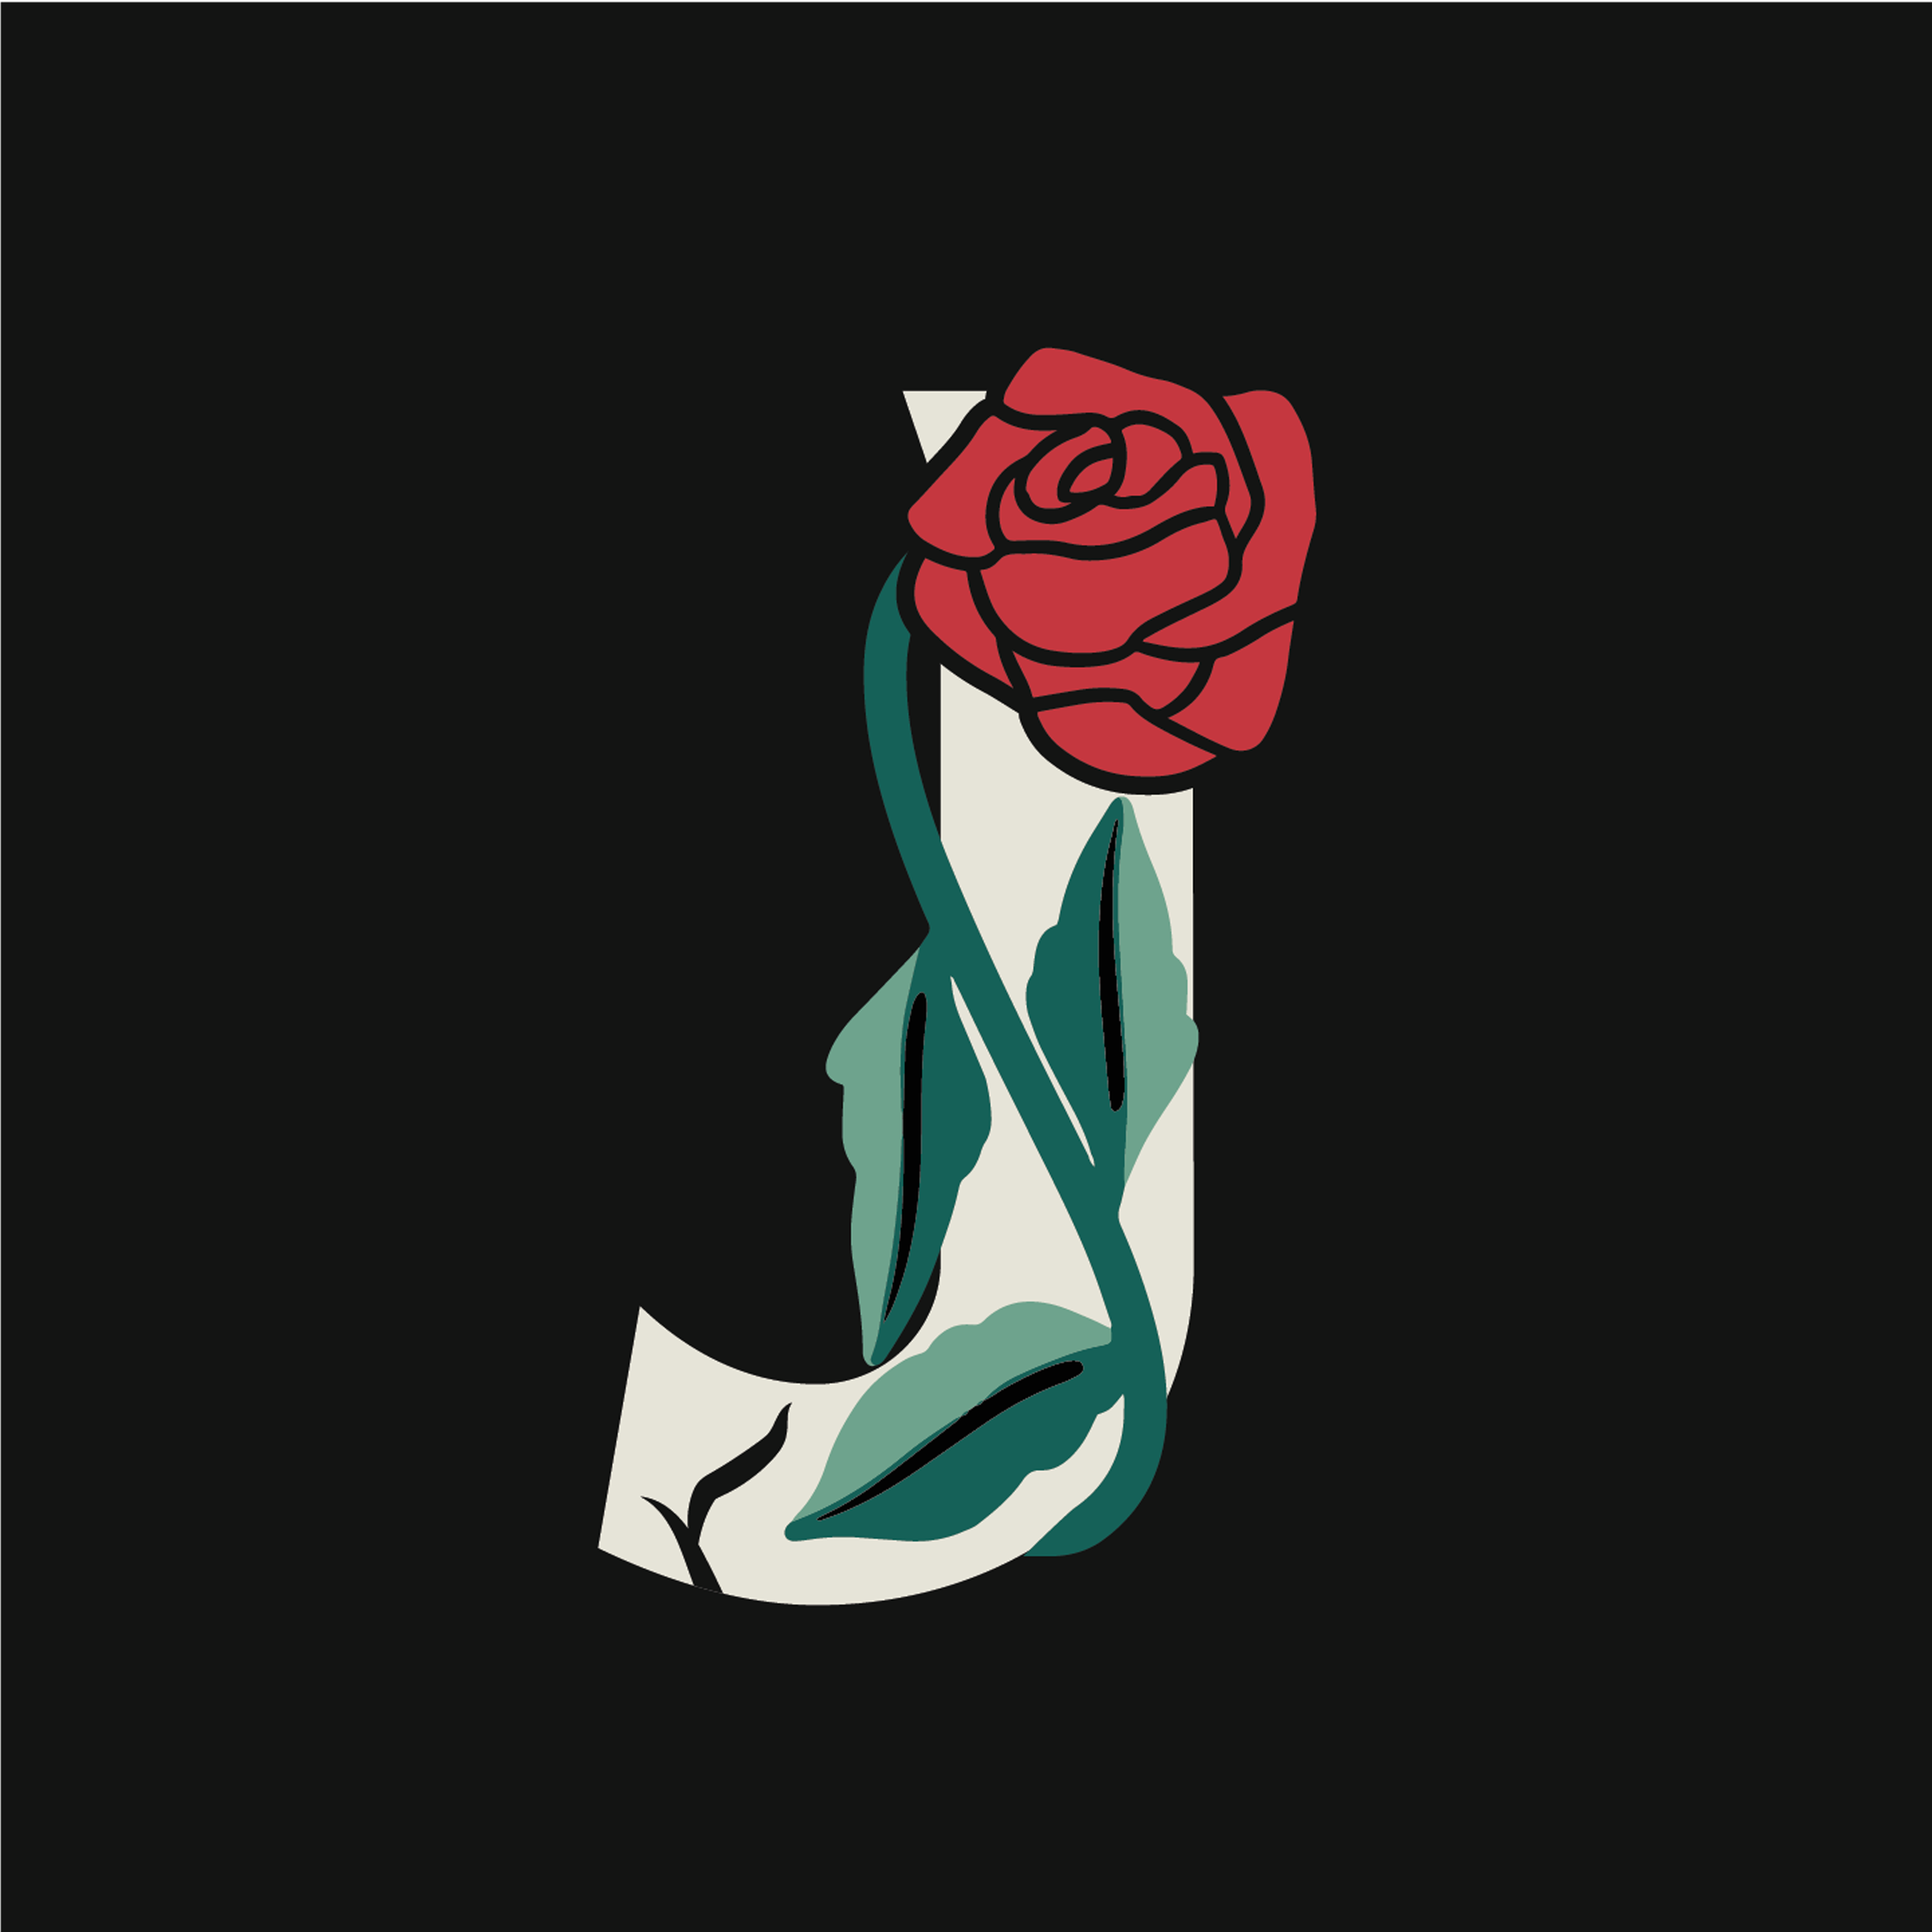 rose-letter-j-design-theme